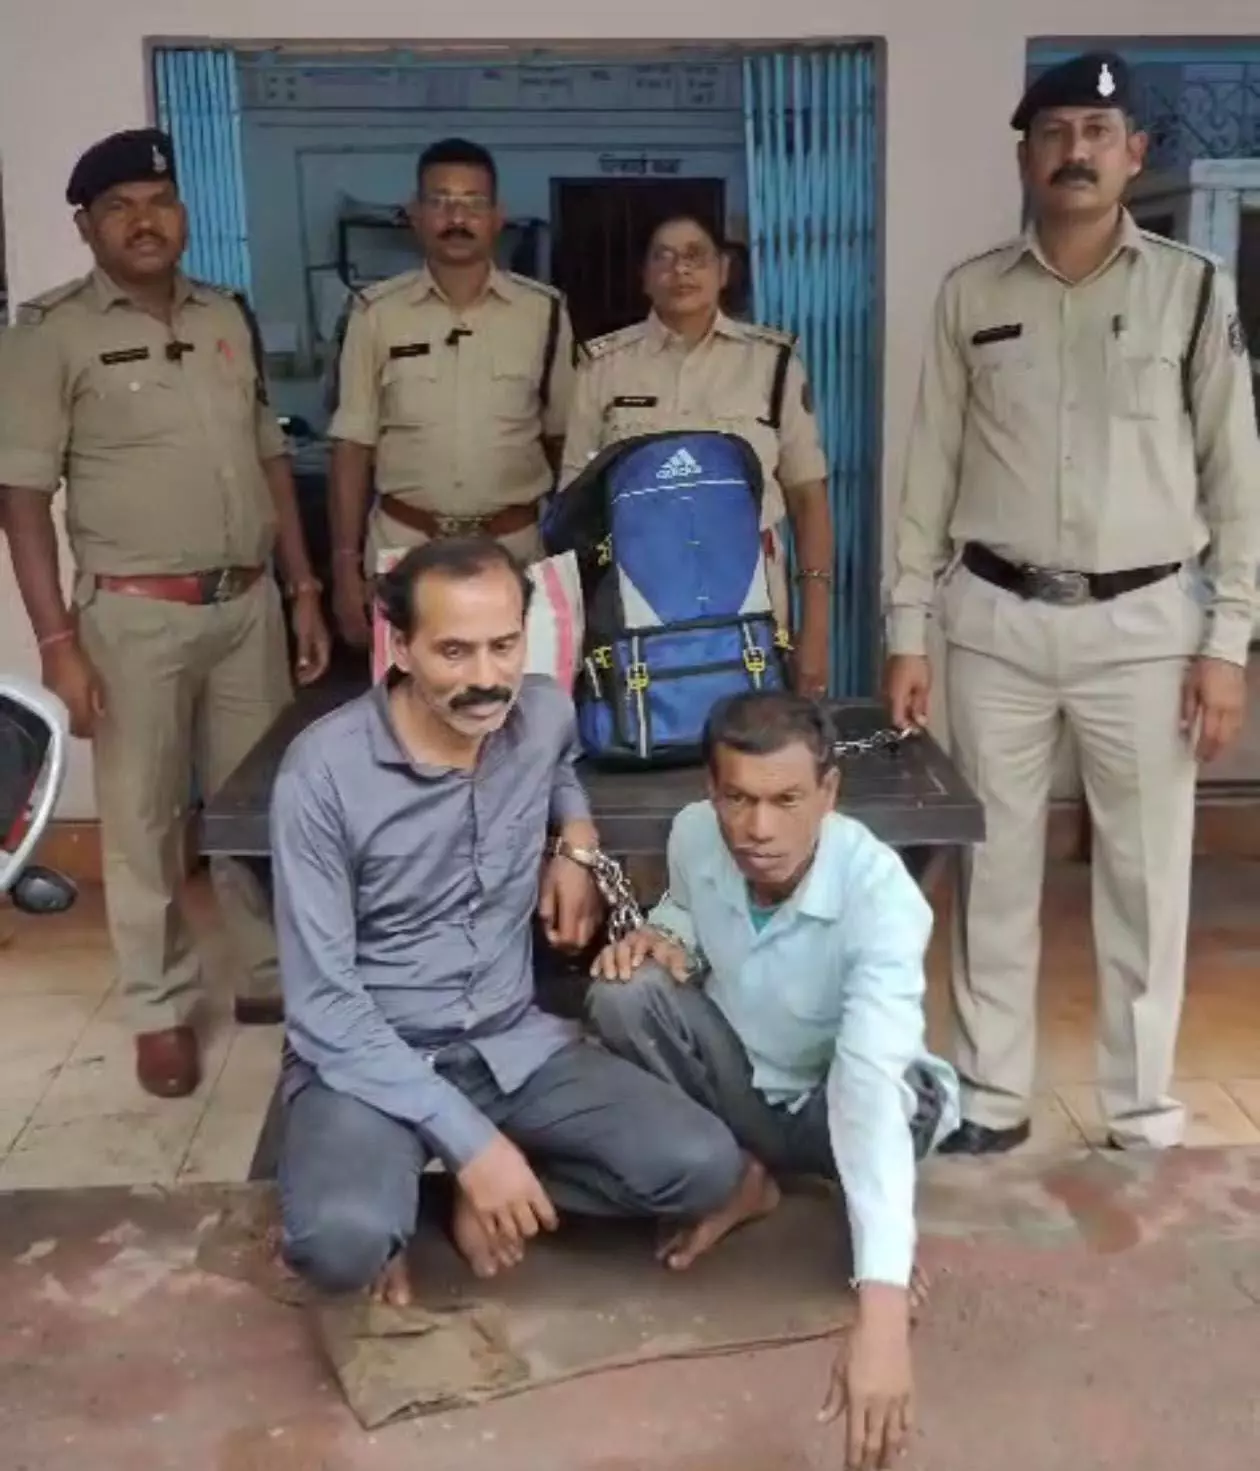 धमतरी-भखारा रोड में गांजा तस्कर गिरफ्तार, दोनों एमपी के निवासी